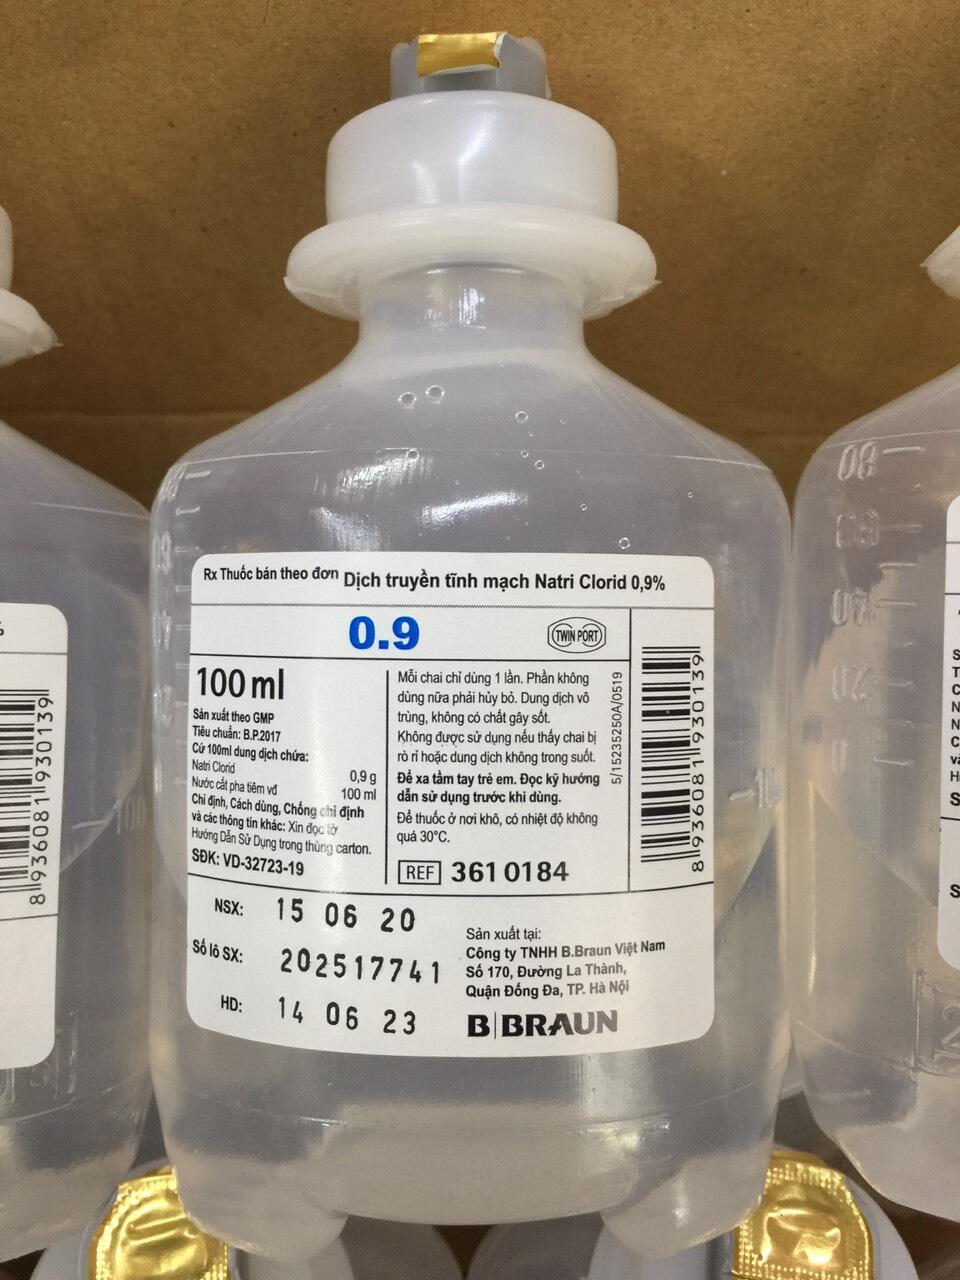 Natri clorid 0.9 có công dụng gì trong điều trị?
